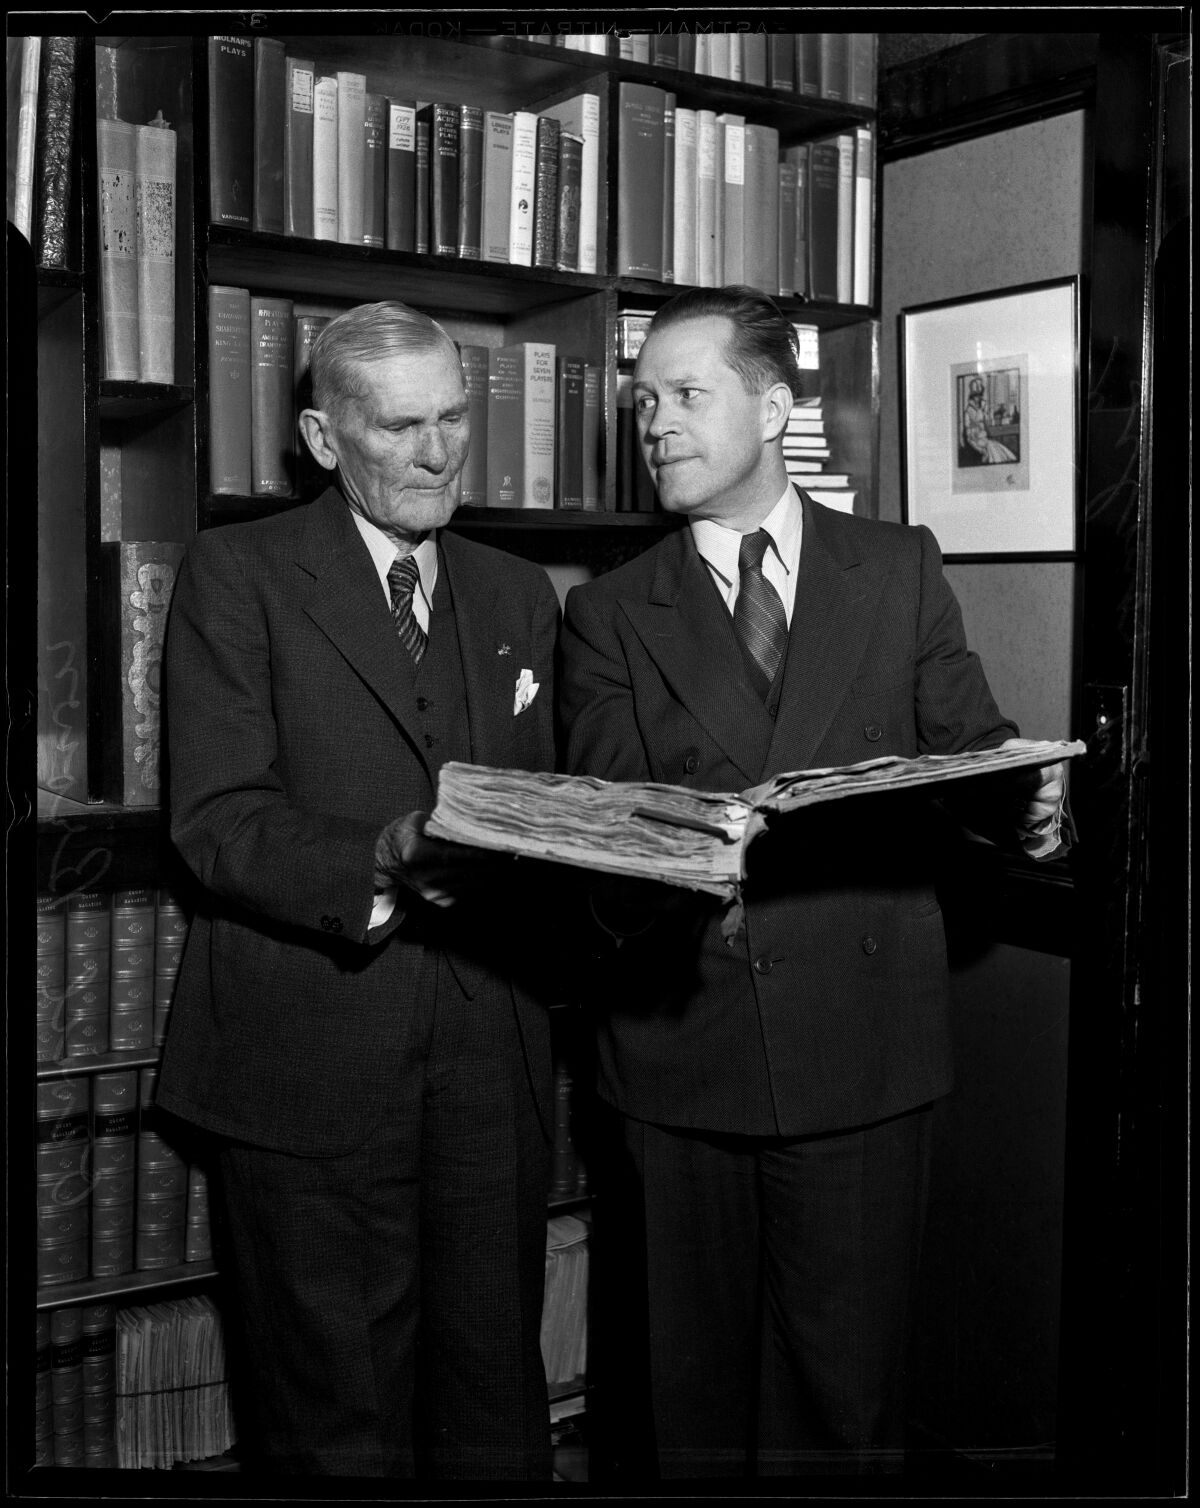 En una foto en blanco y negro, dos hombres se paran frente a un librero, uno de ellos sostiene un gran libro abierto. 